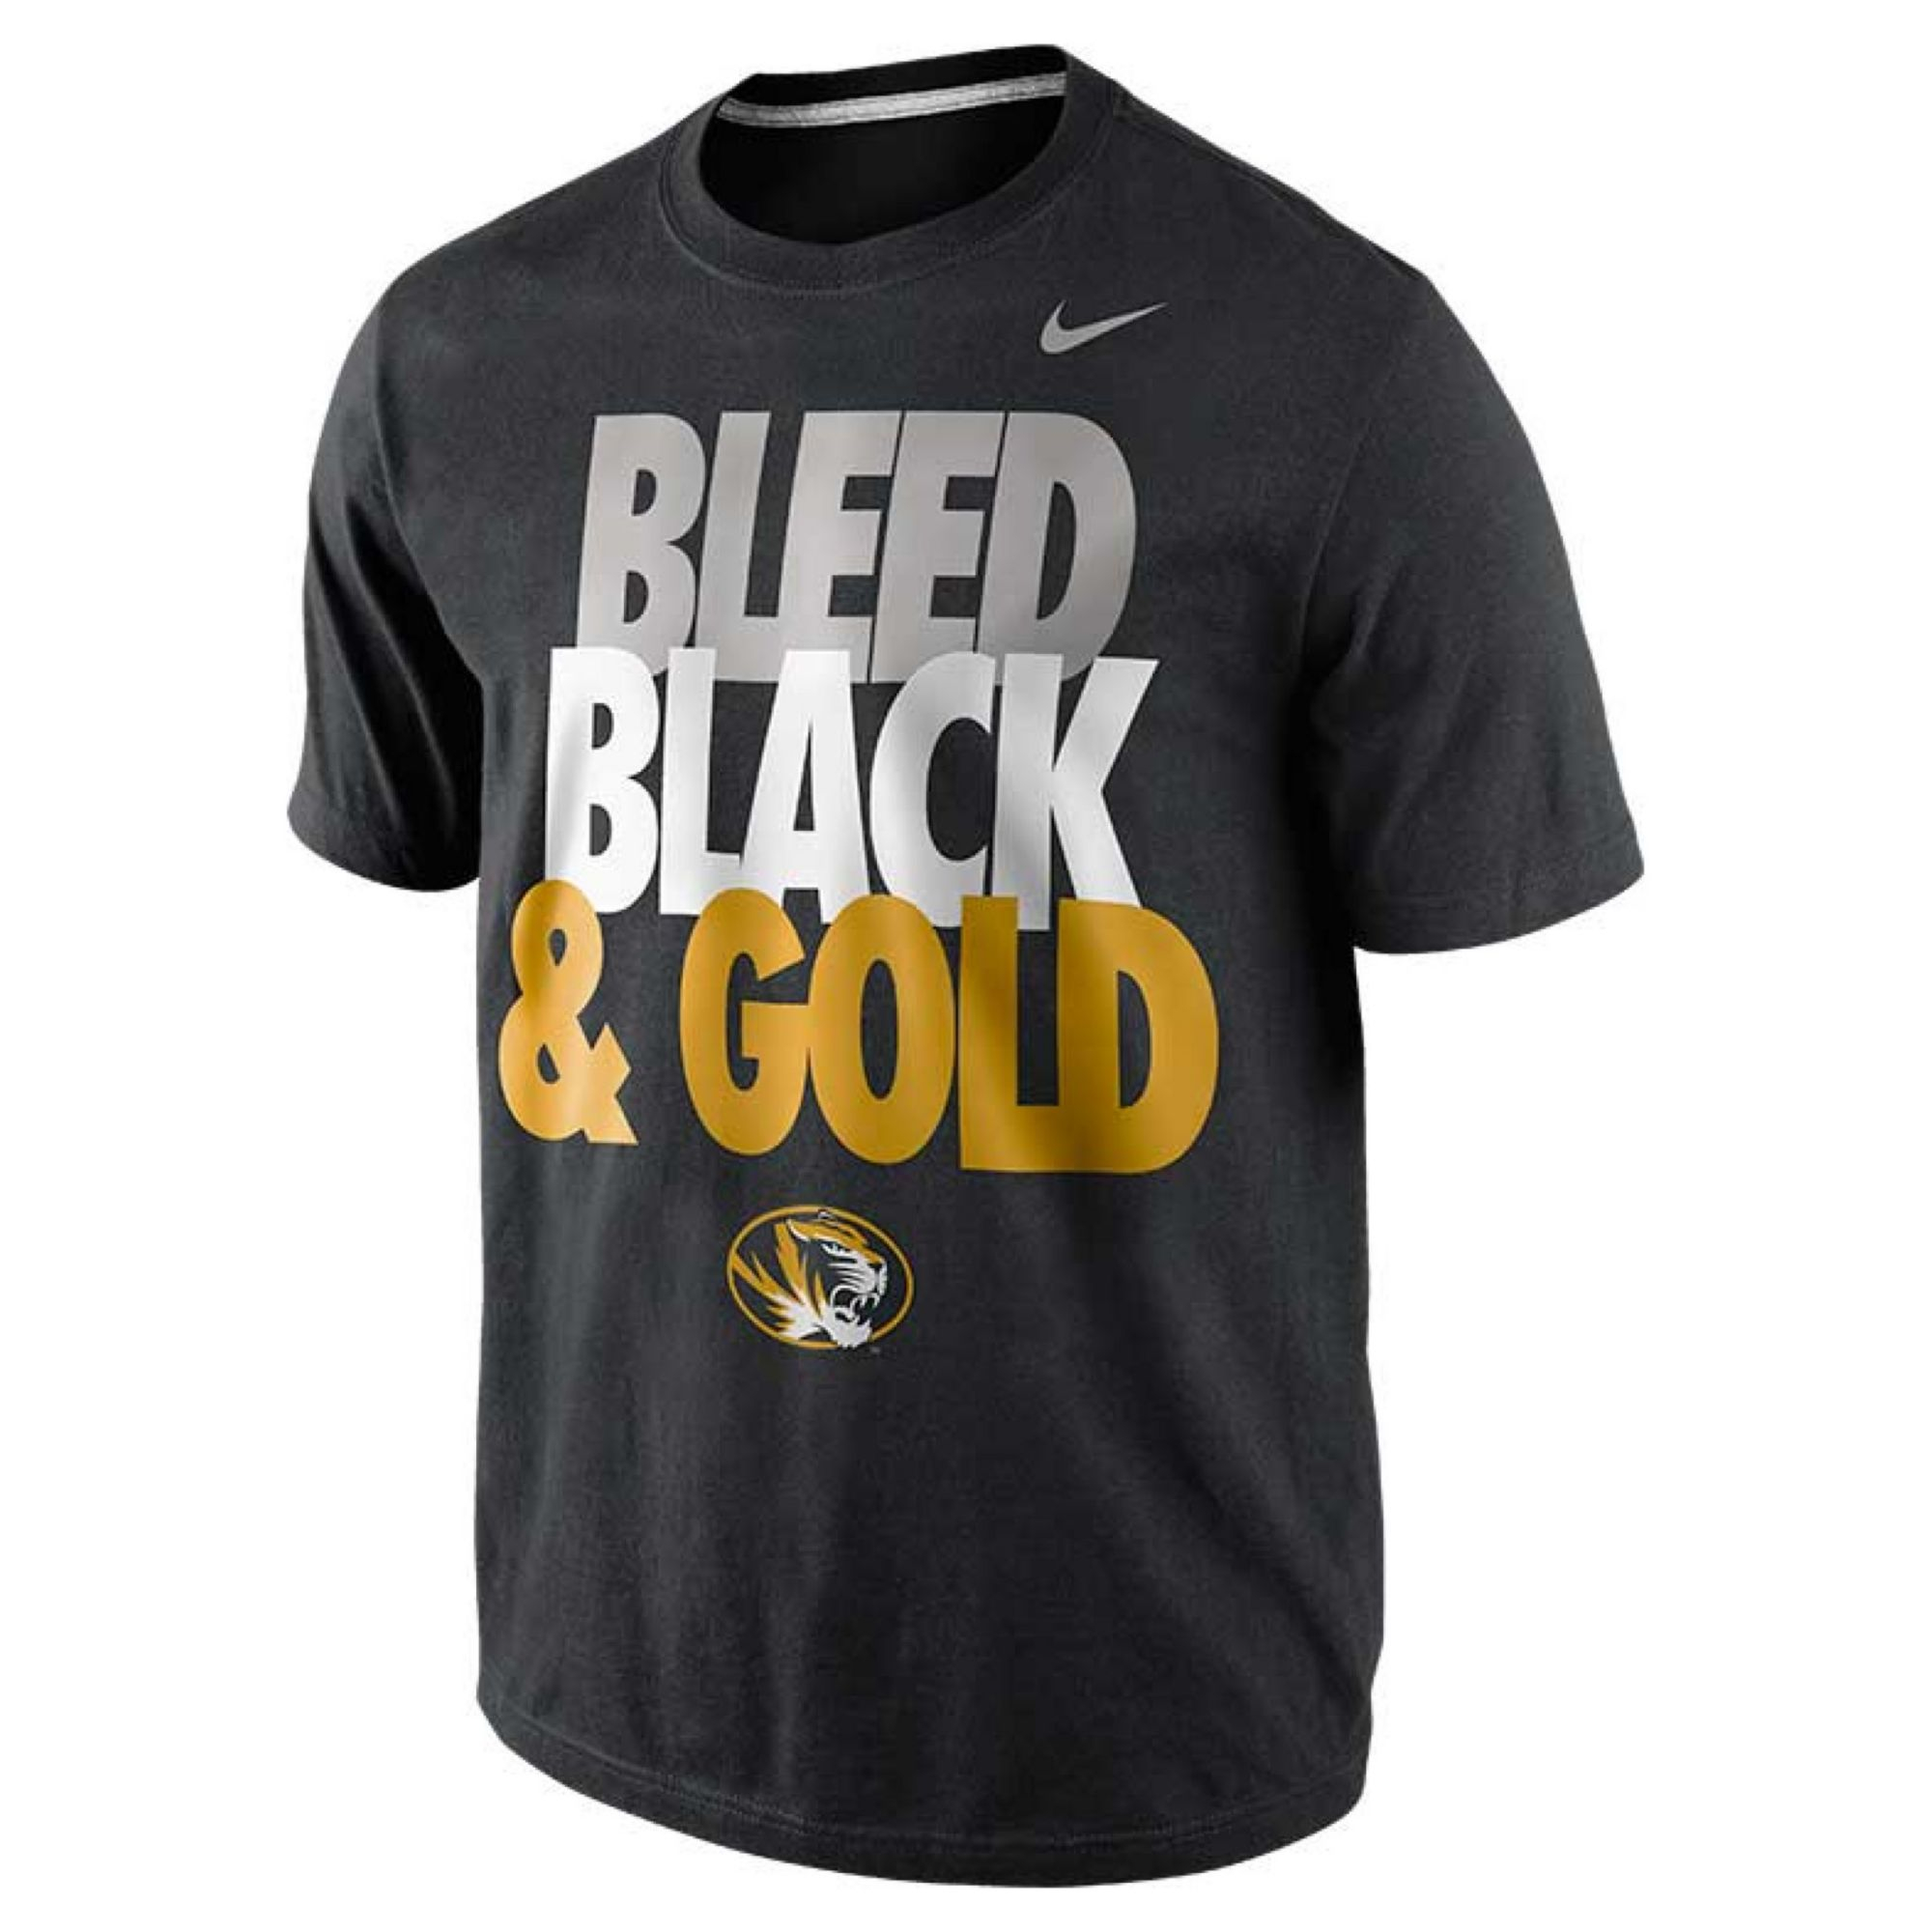 Nike Bleed Black Gold Missouri T-Shirt for Men - Lyst